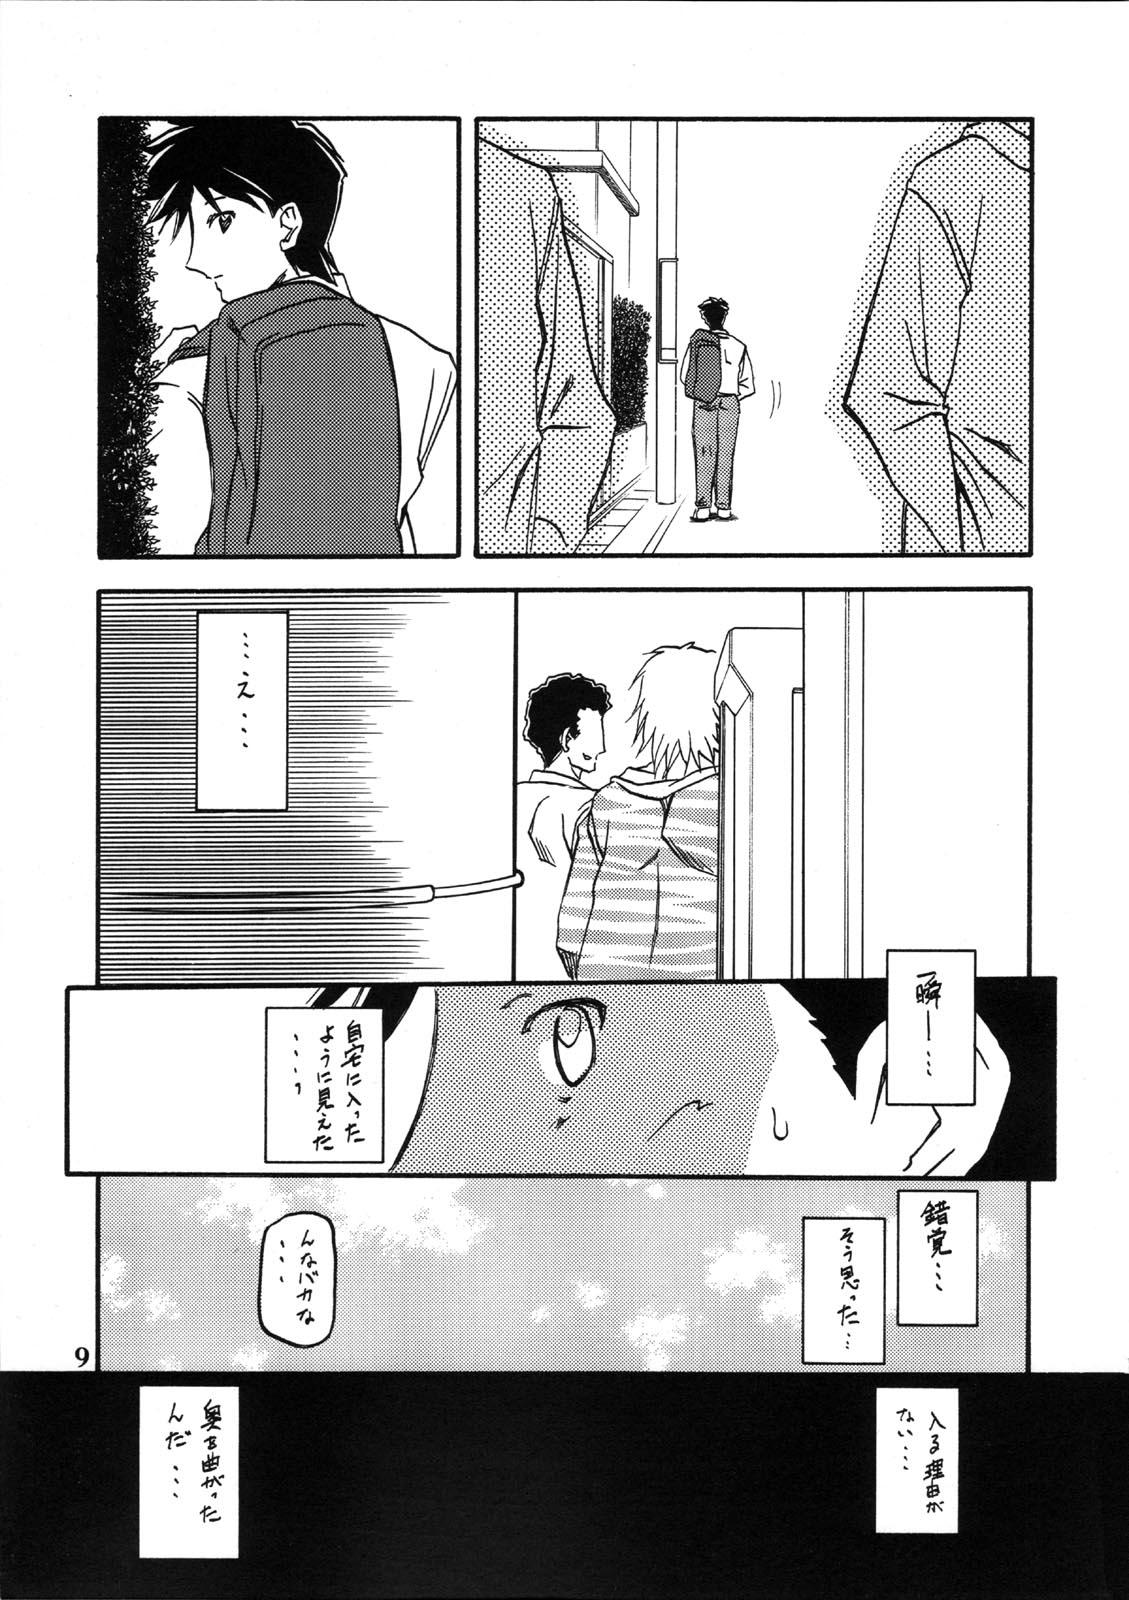 Leite Akebi no Mi - Miwako - Akebi no mi Bukkake Boys - Page 9